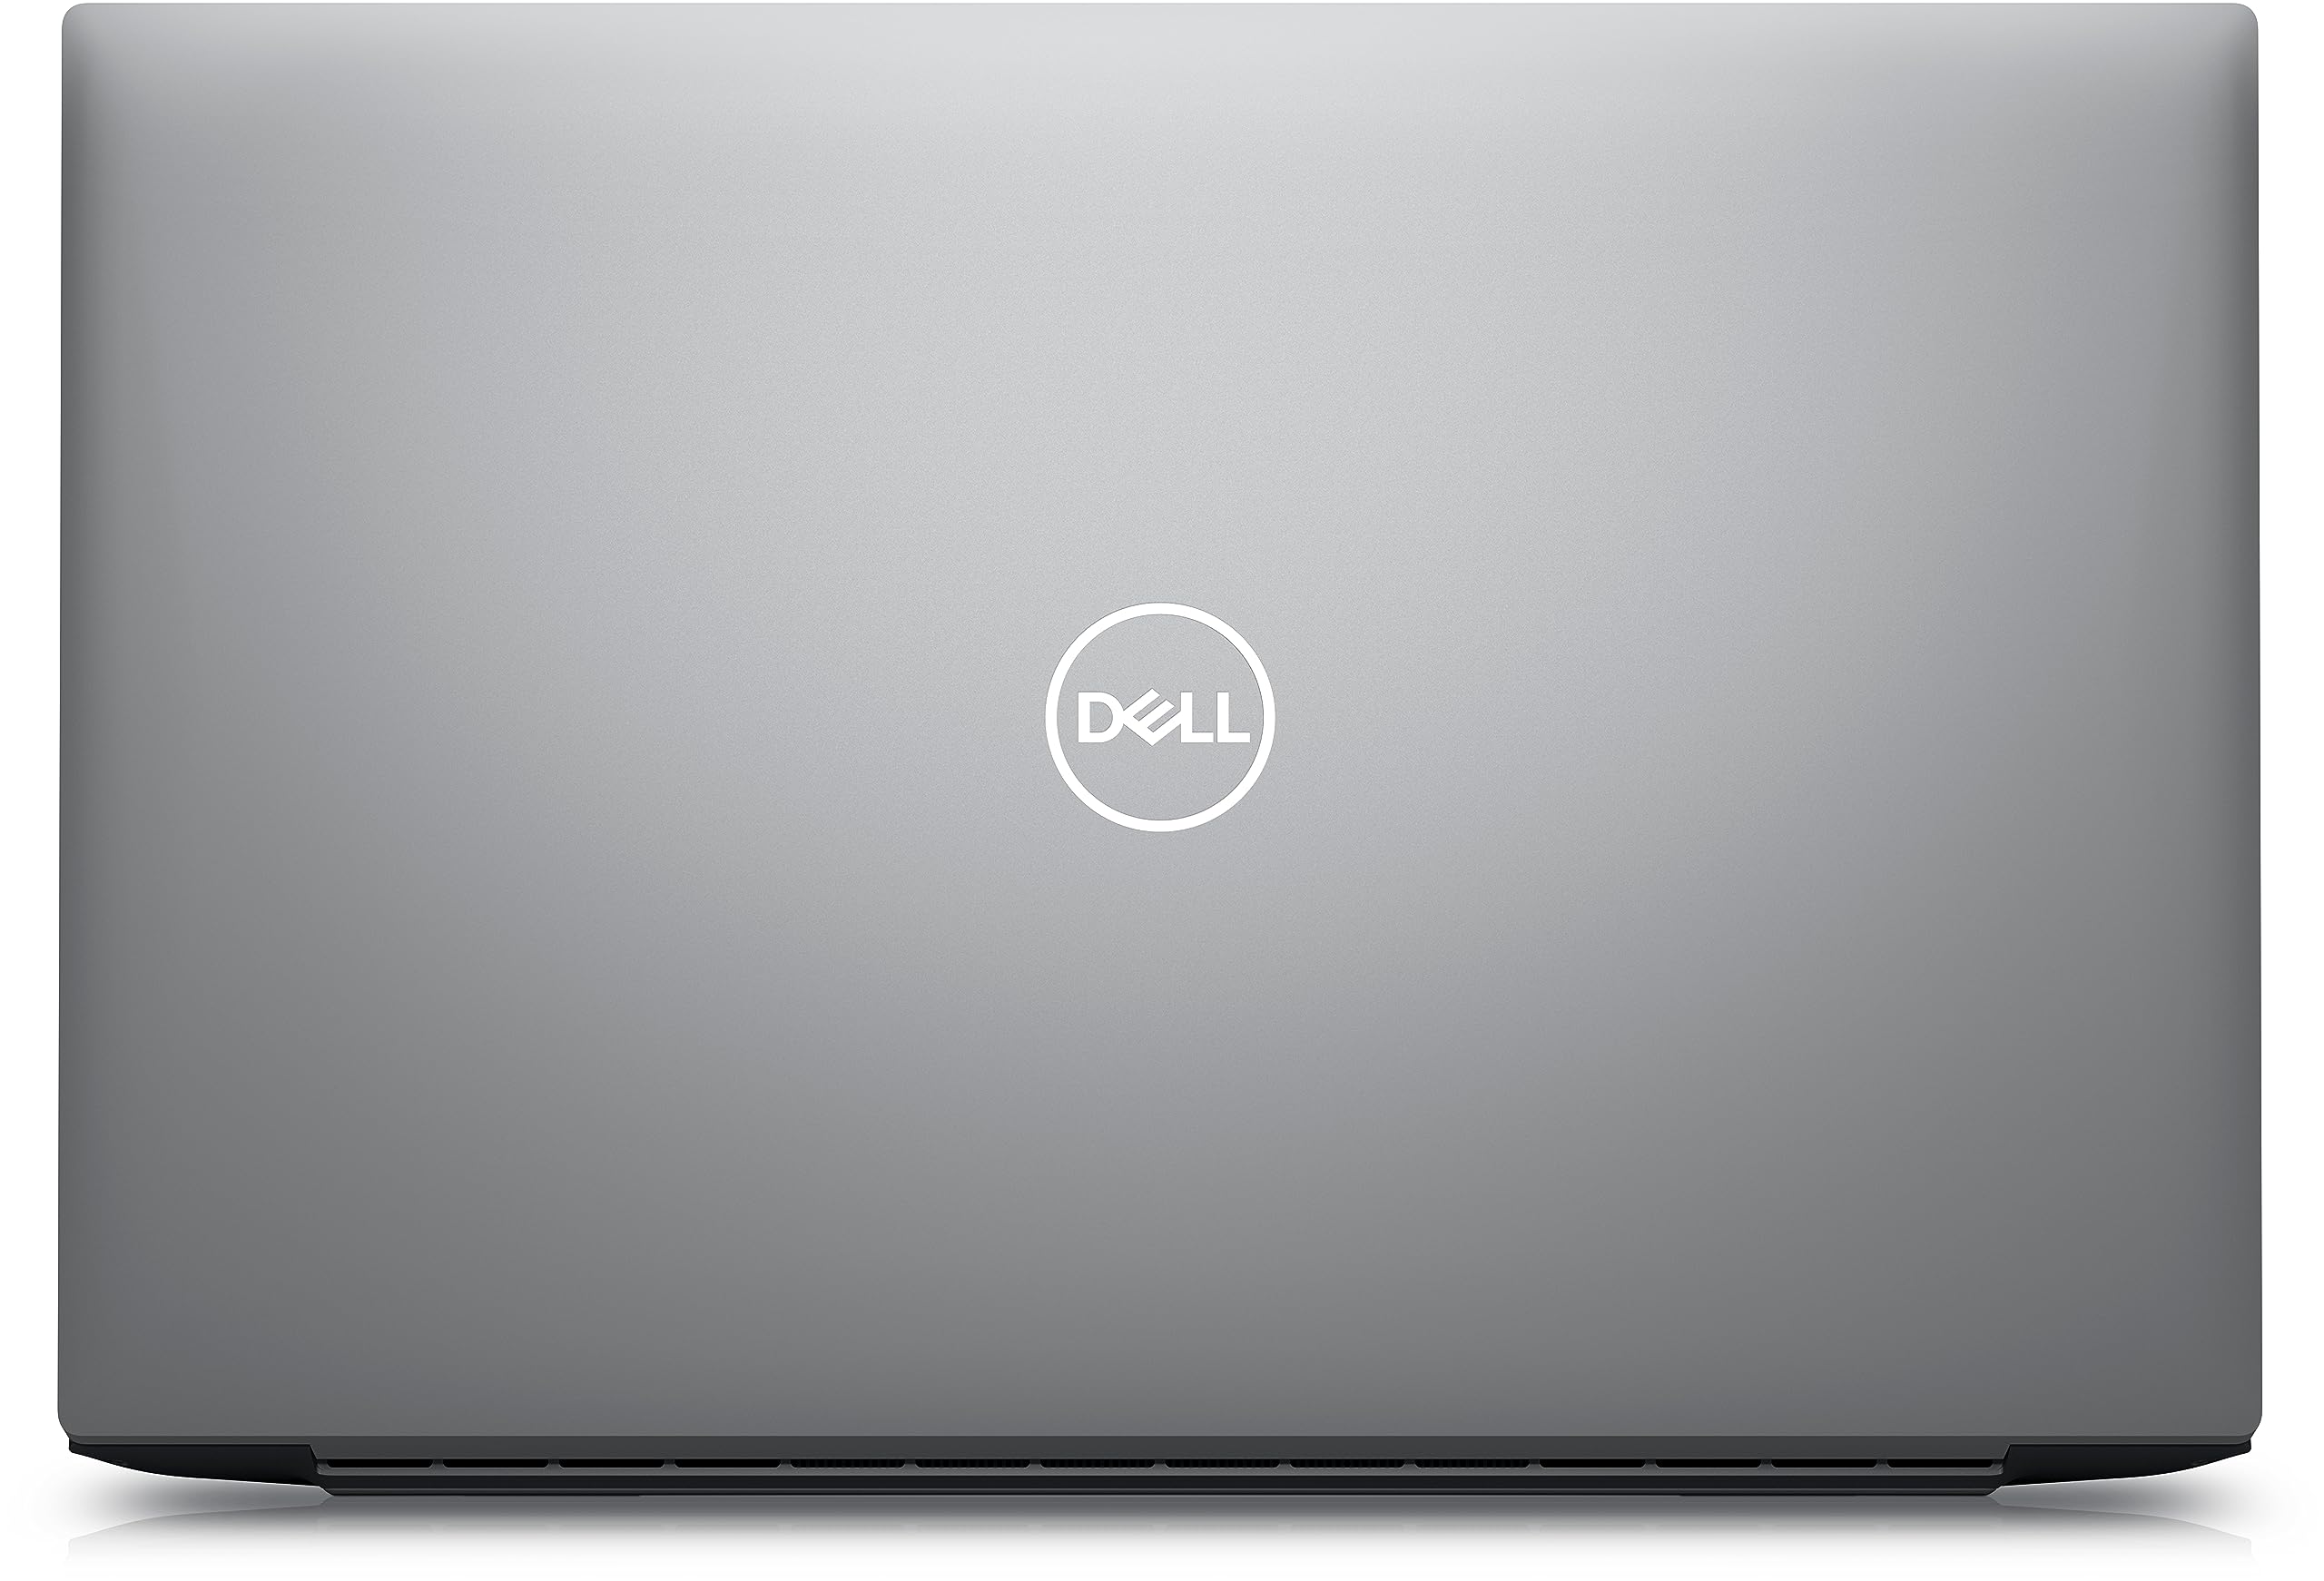 Dell Precision 5770 17” FHD+, i5 12600H, (12 Core, 4.5GHz), Fingerprint Reader, vPro, WIFI 6E, 3 Year Onsite Warranty, Backlit Keyboard, Windows 11 Pro (Renewed)